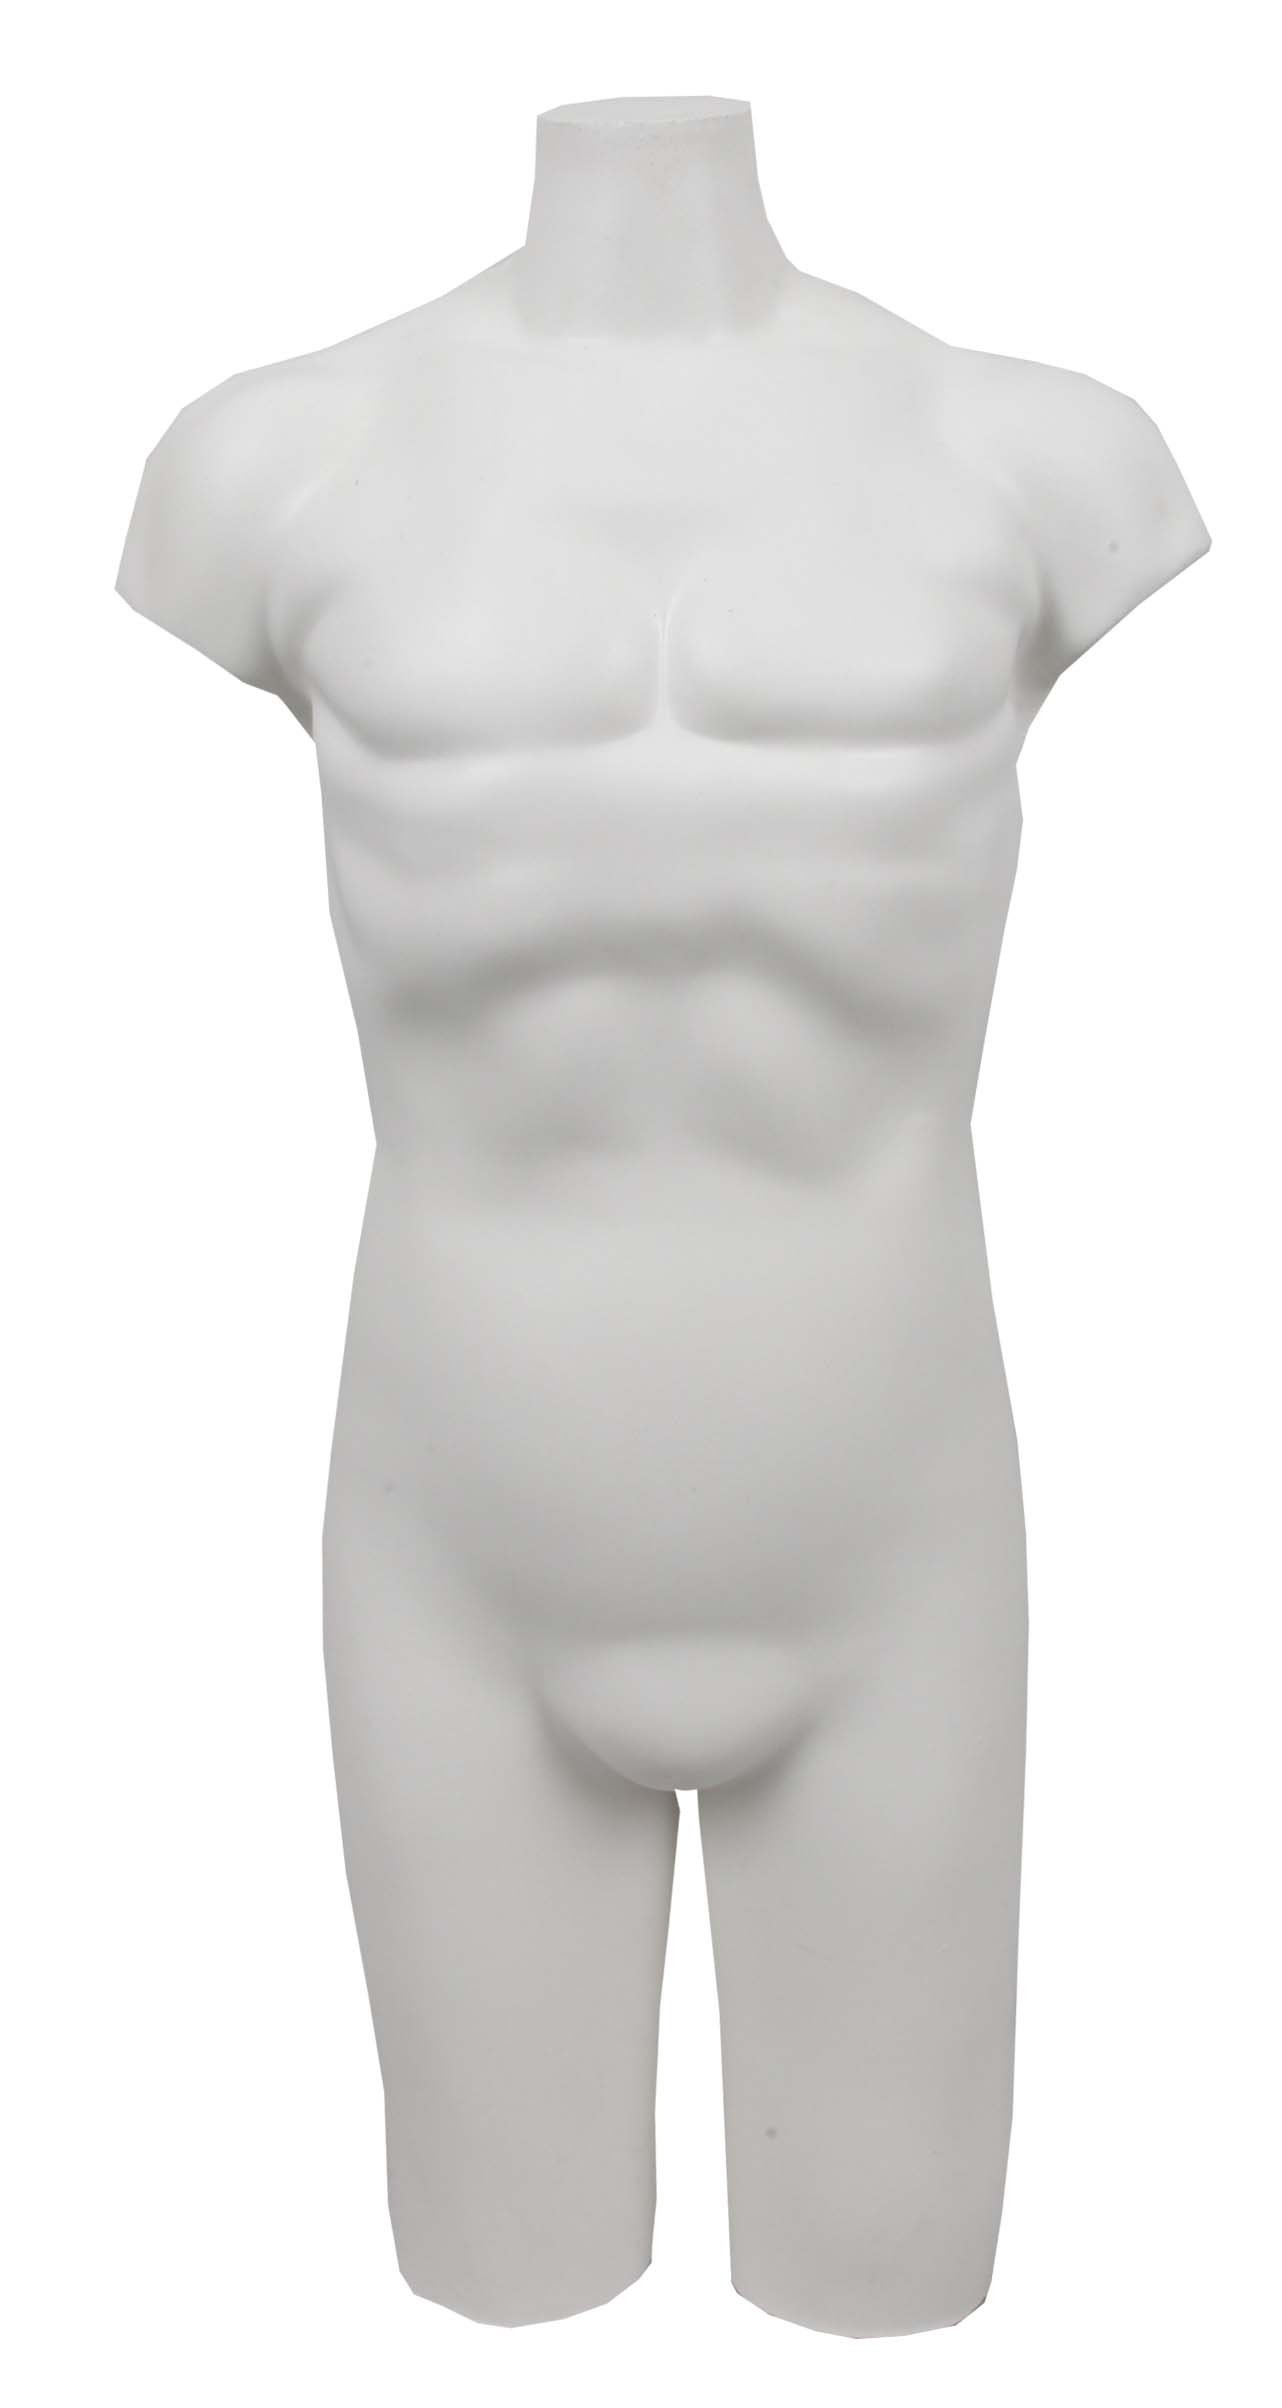 Manequim Masculino Meio Corpo. PVC Tradicional. Branco – Cmanequim